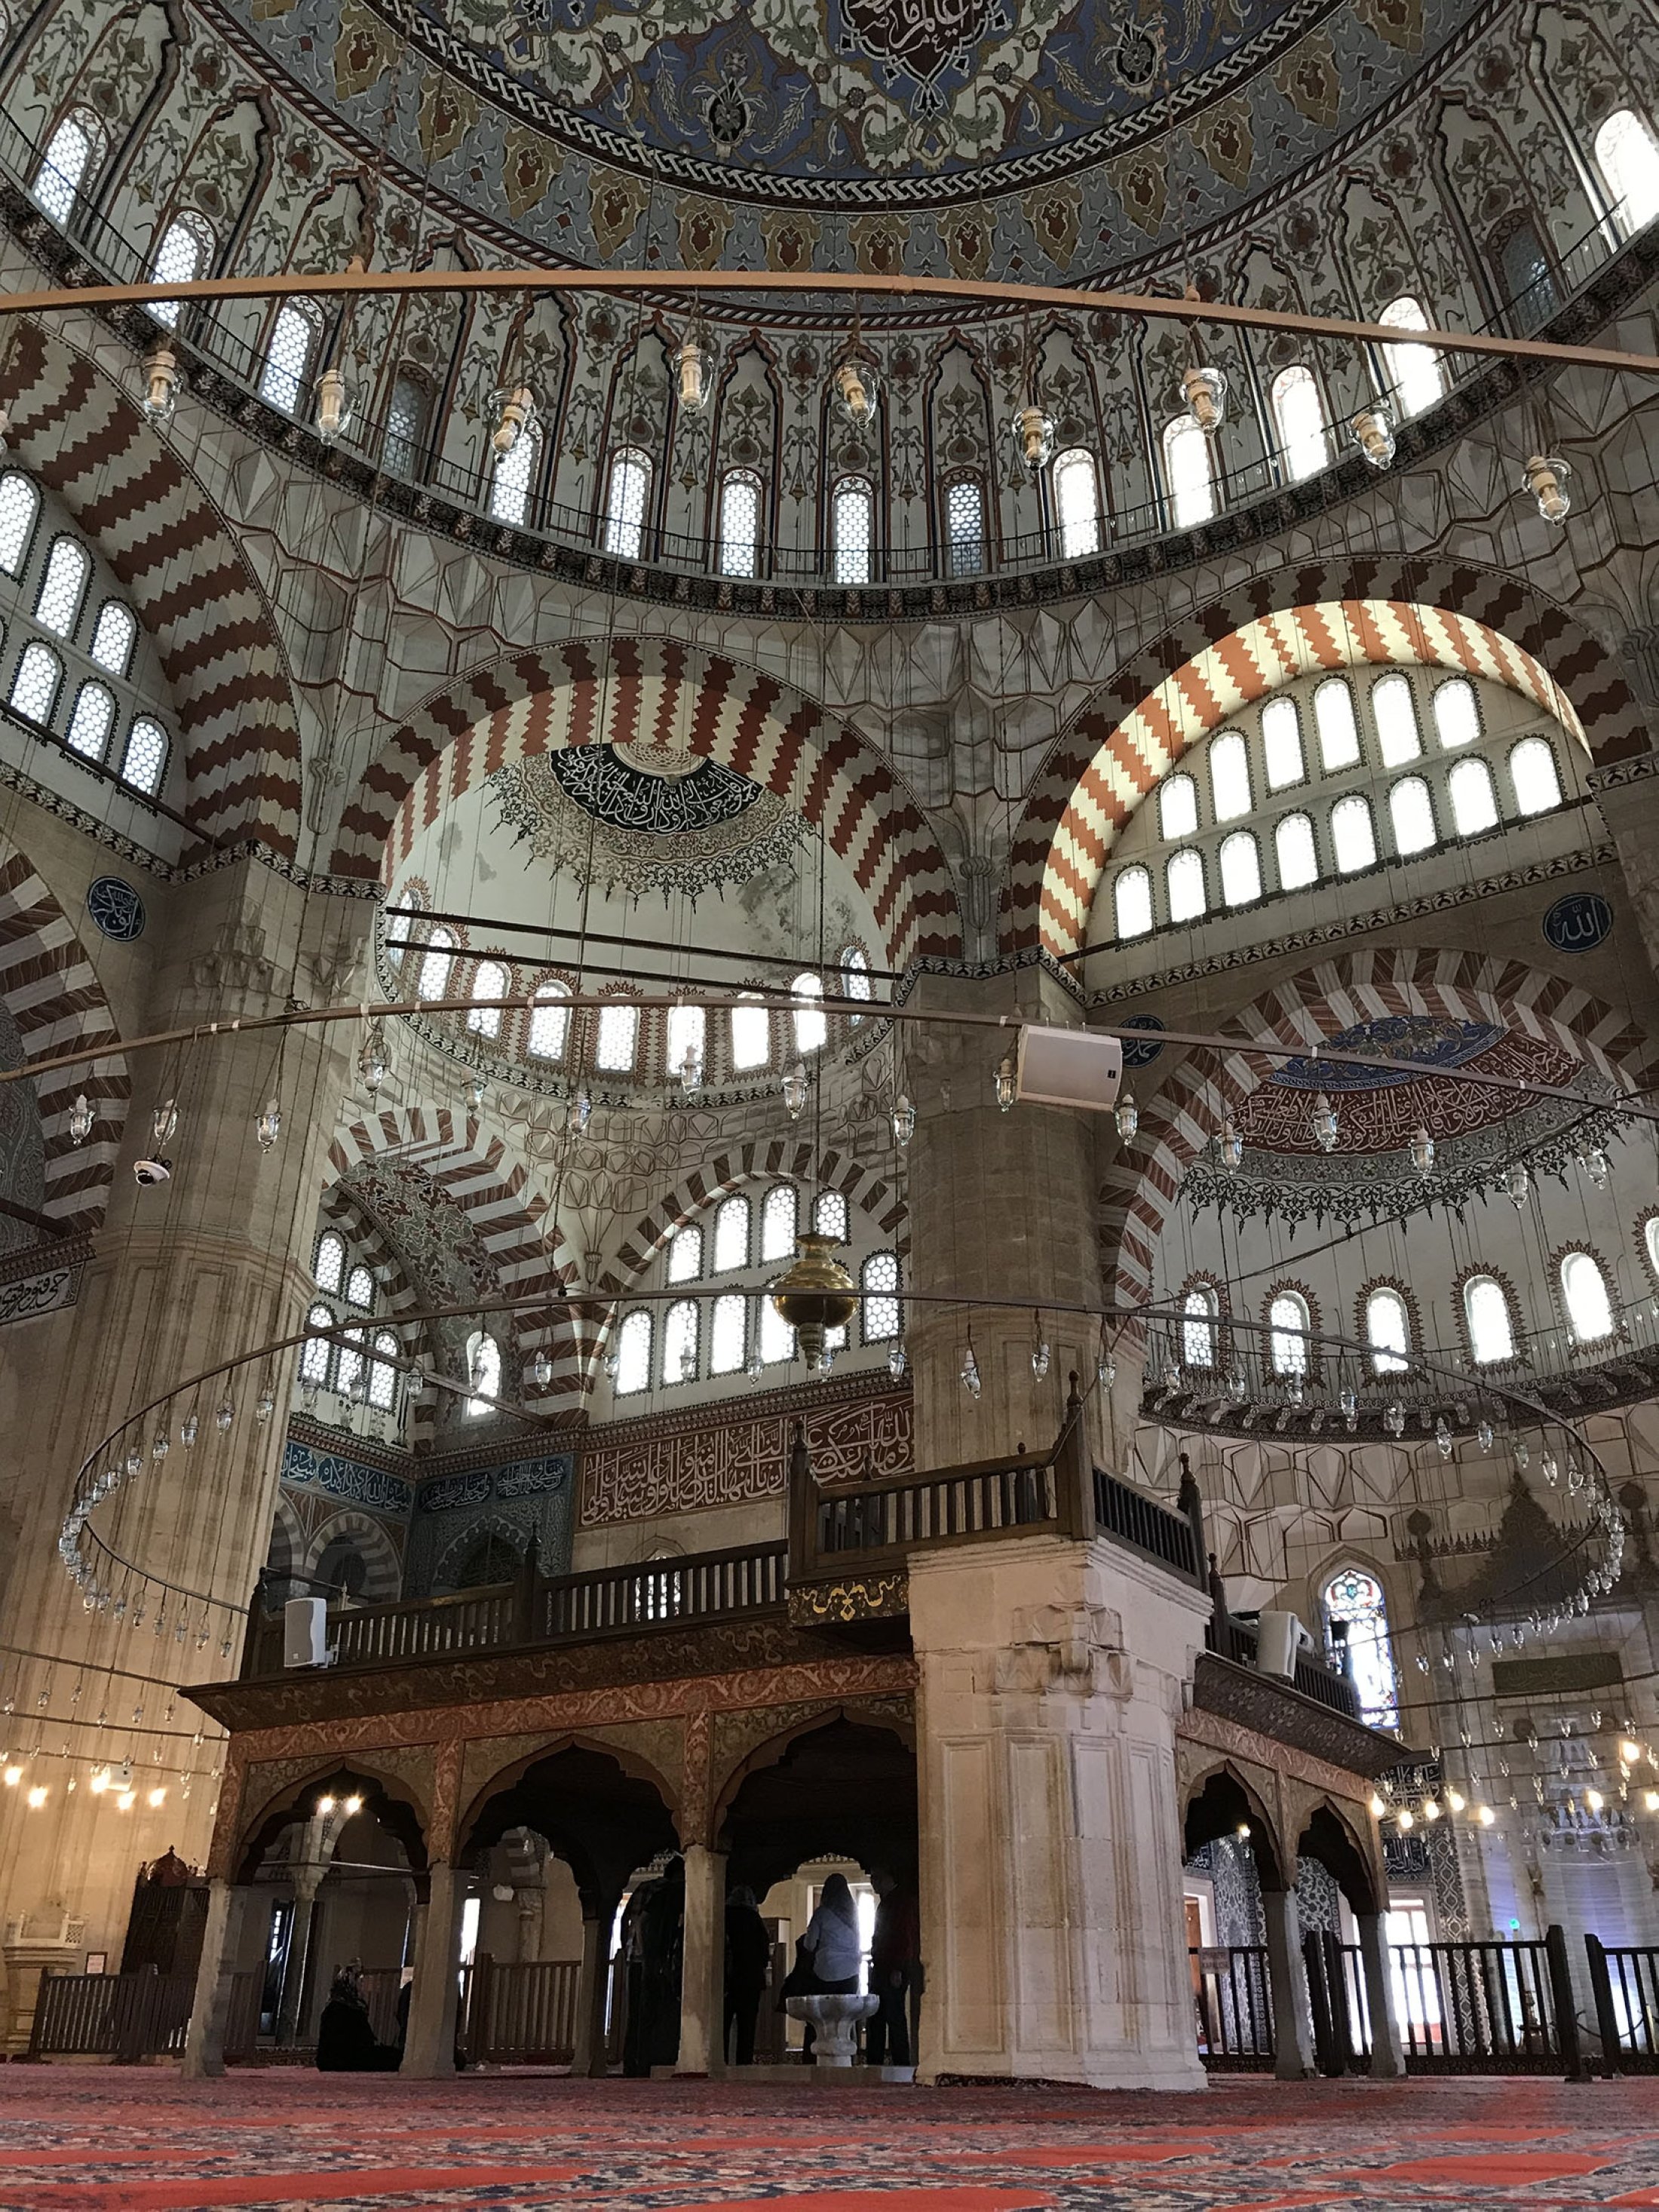 Selain keindahan arsitekturnya, Masjid Selimiye, yang memiliki empat menara, juga memikat orang dengan dekorasi marmer, ubin, kayu, batu, dan mutiara.  (Foto oleh zge engelen)